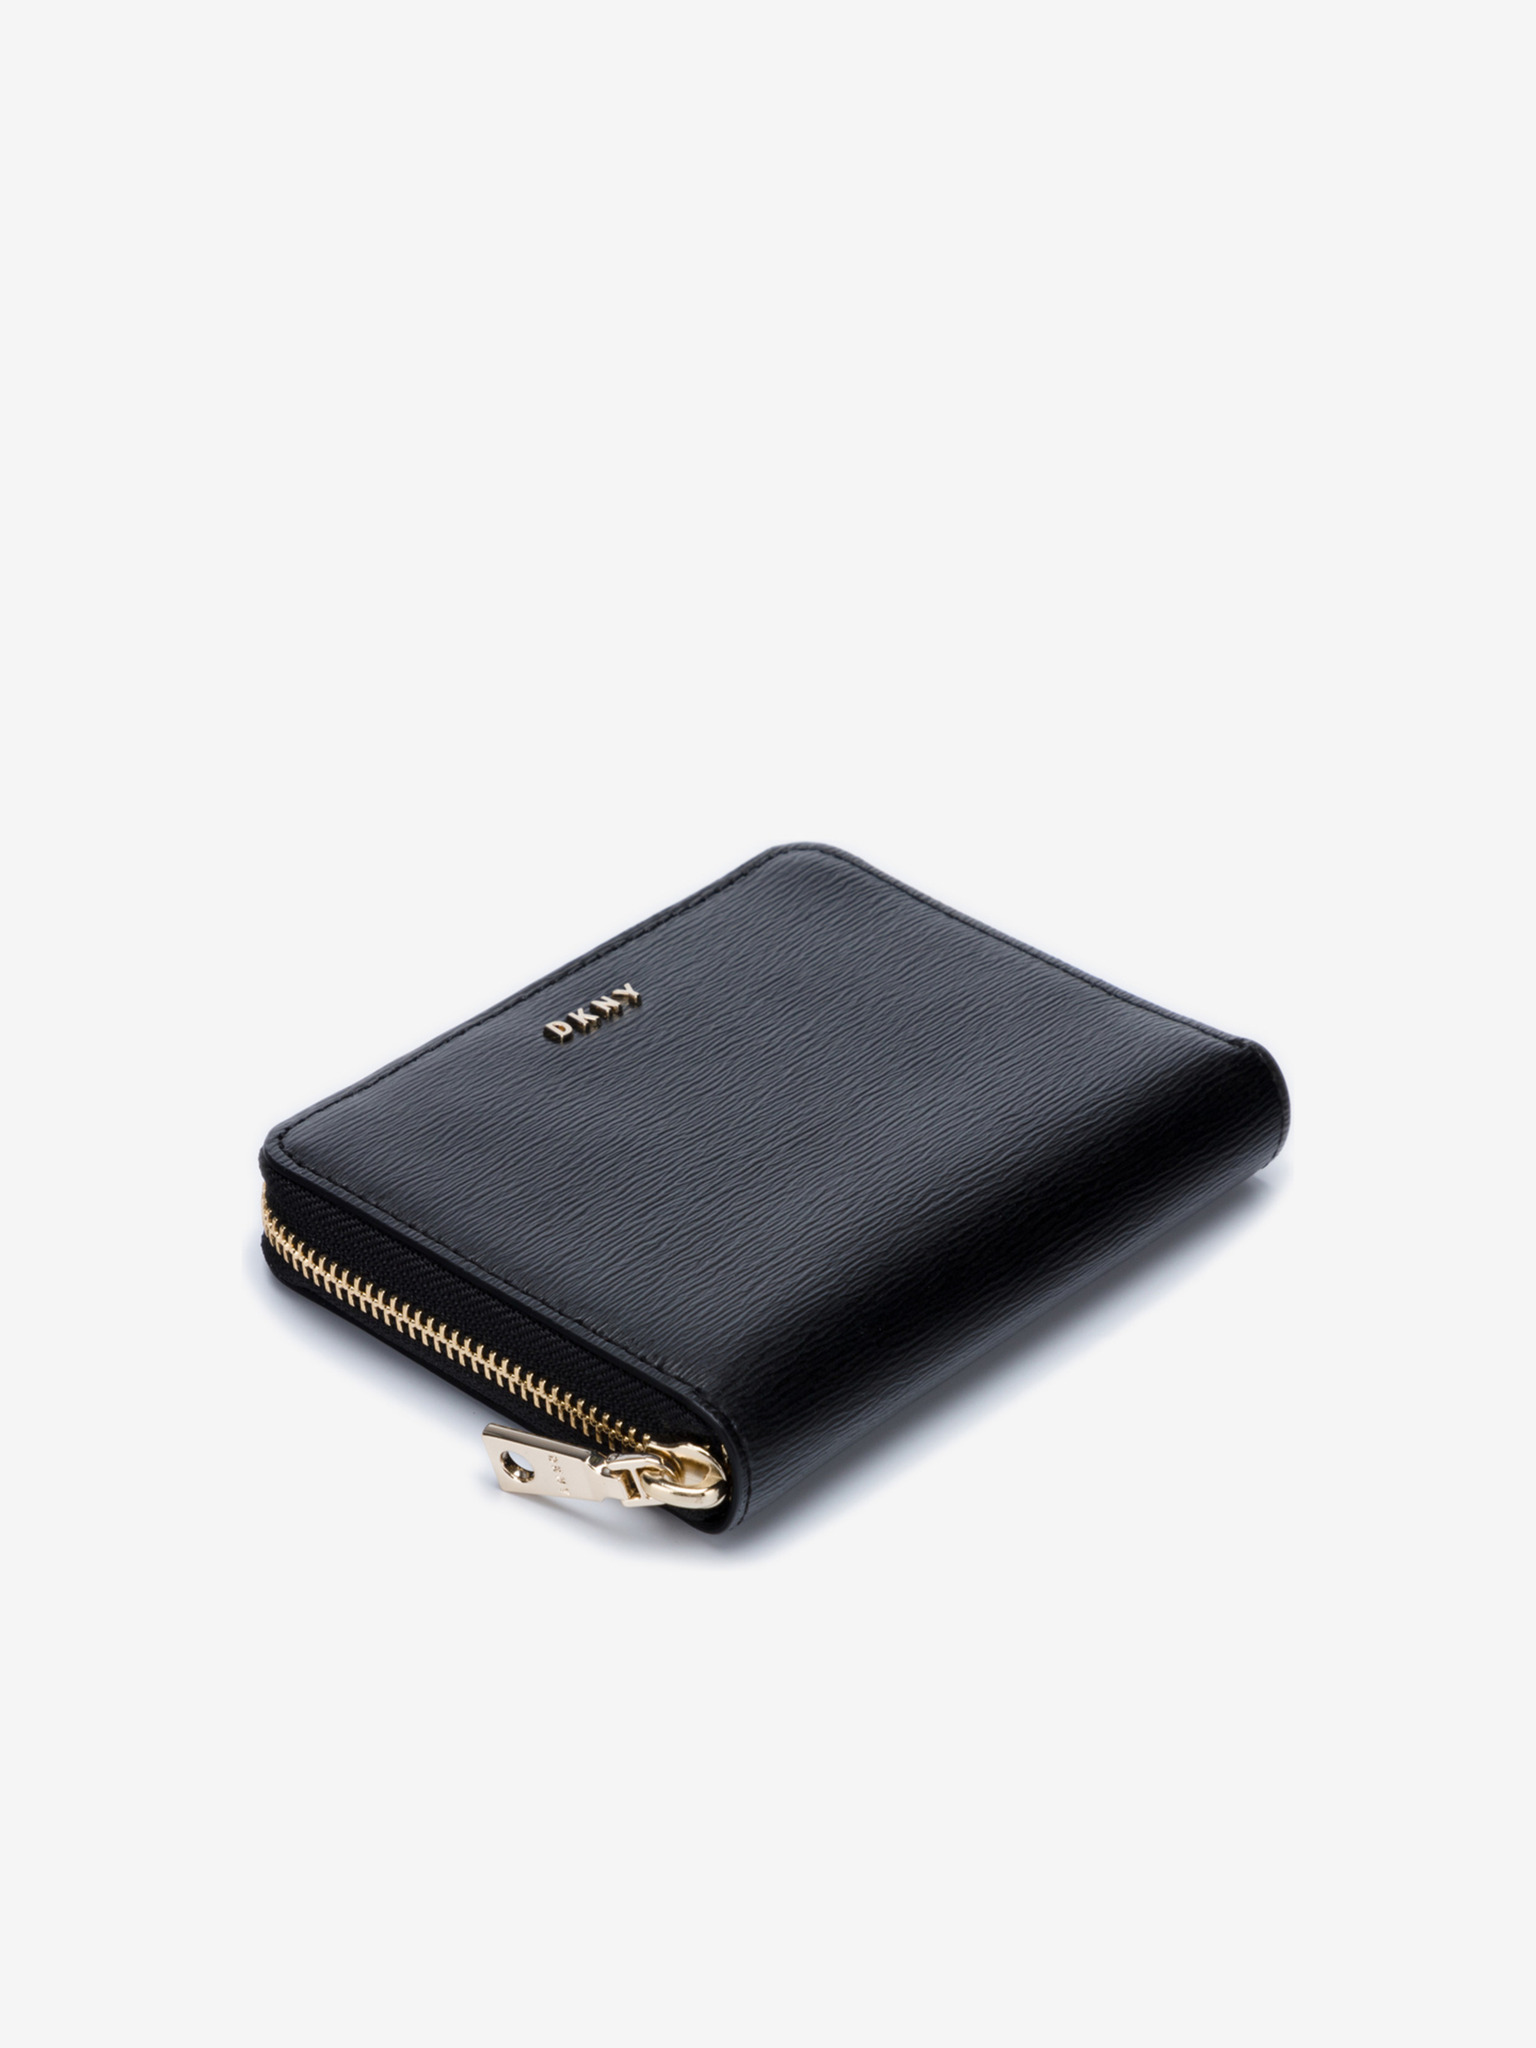 DKNY Womens Wallet, Black (Black/Gold) - R8313656: Buy Online at Best Price  in UAE - Amazon.ae